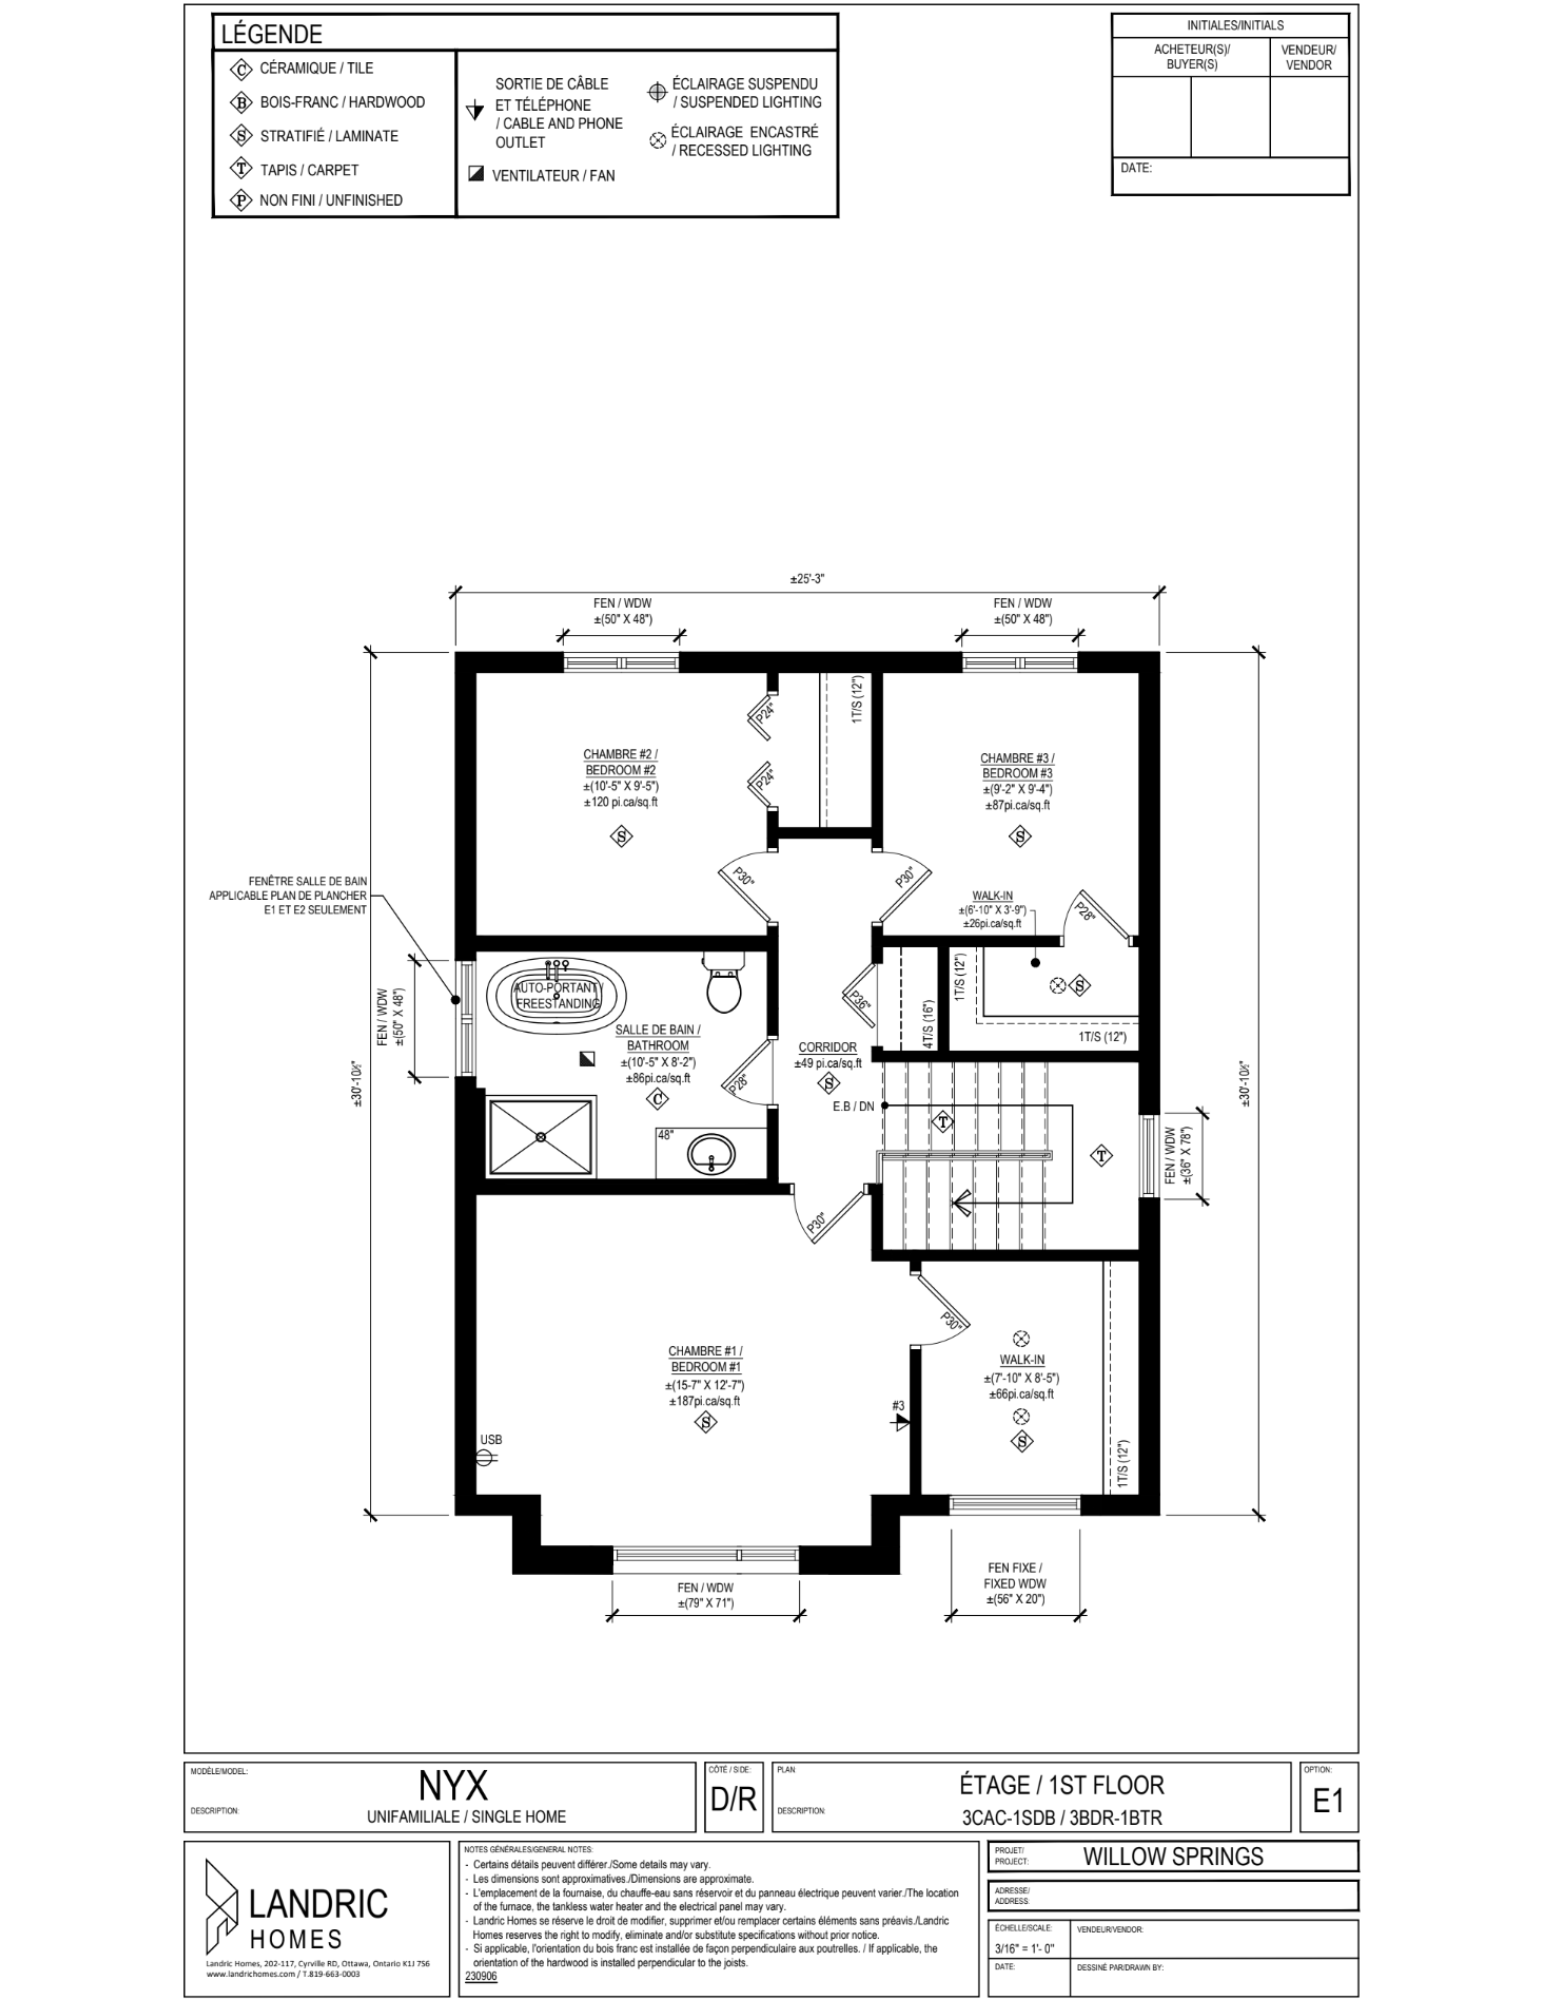 Willow Springs, Limoges floor plans (20)